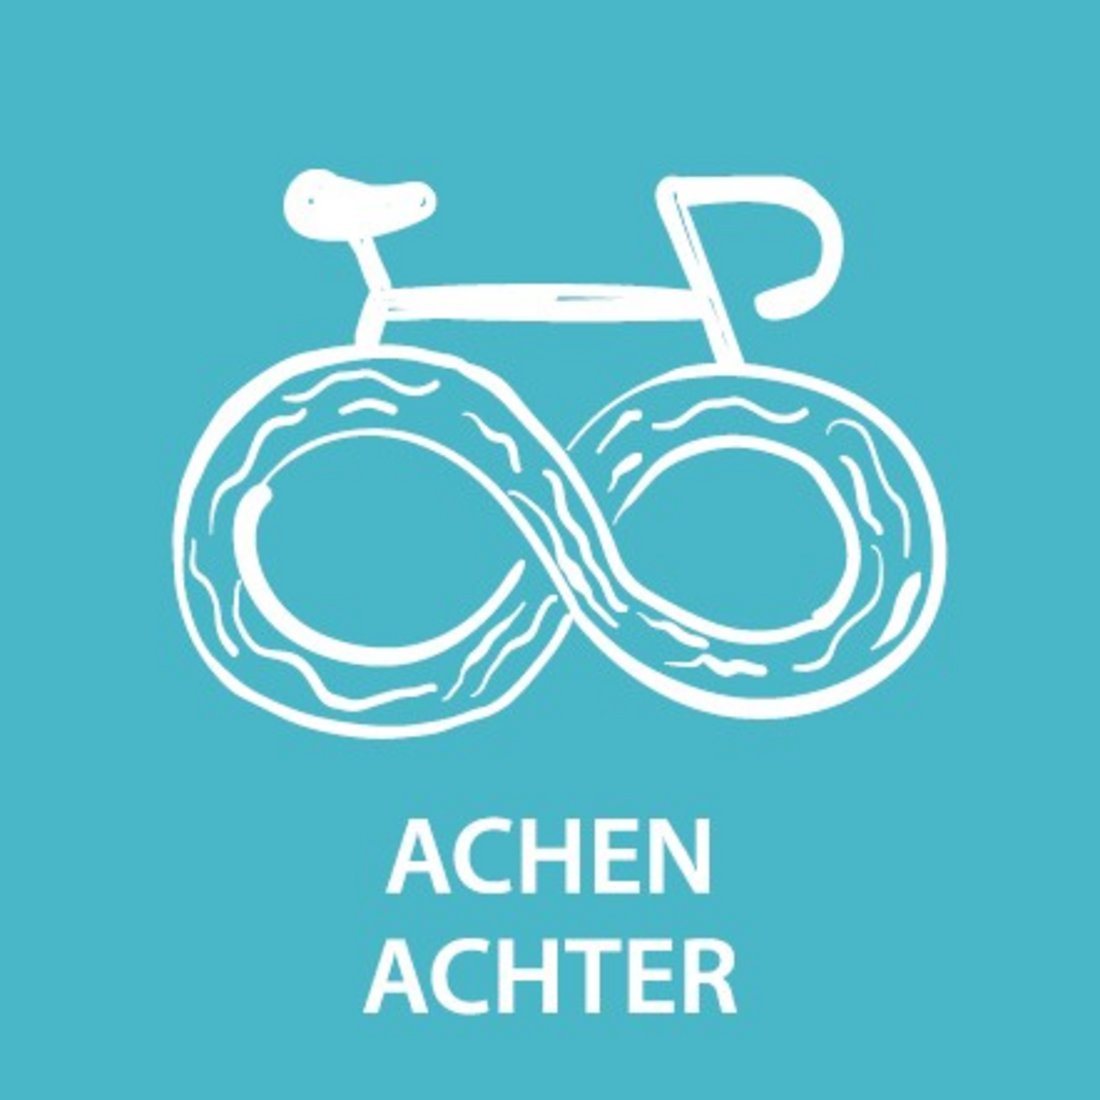 Achen-Achter